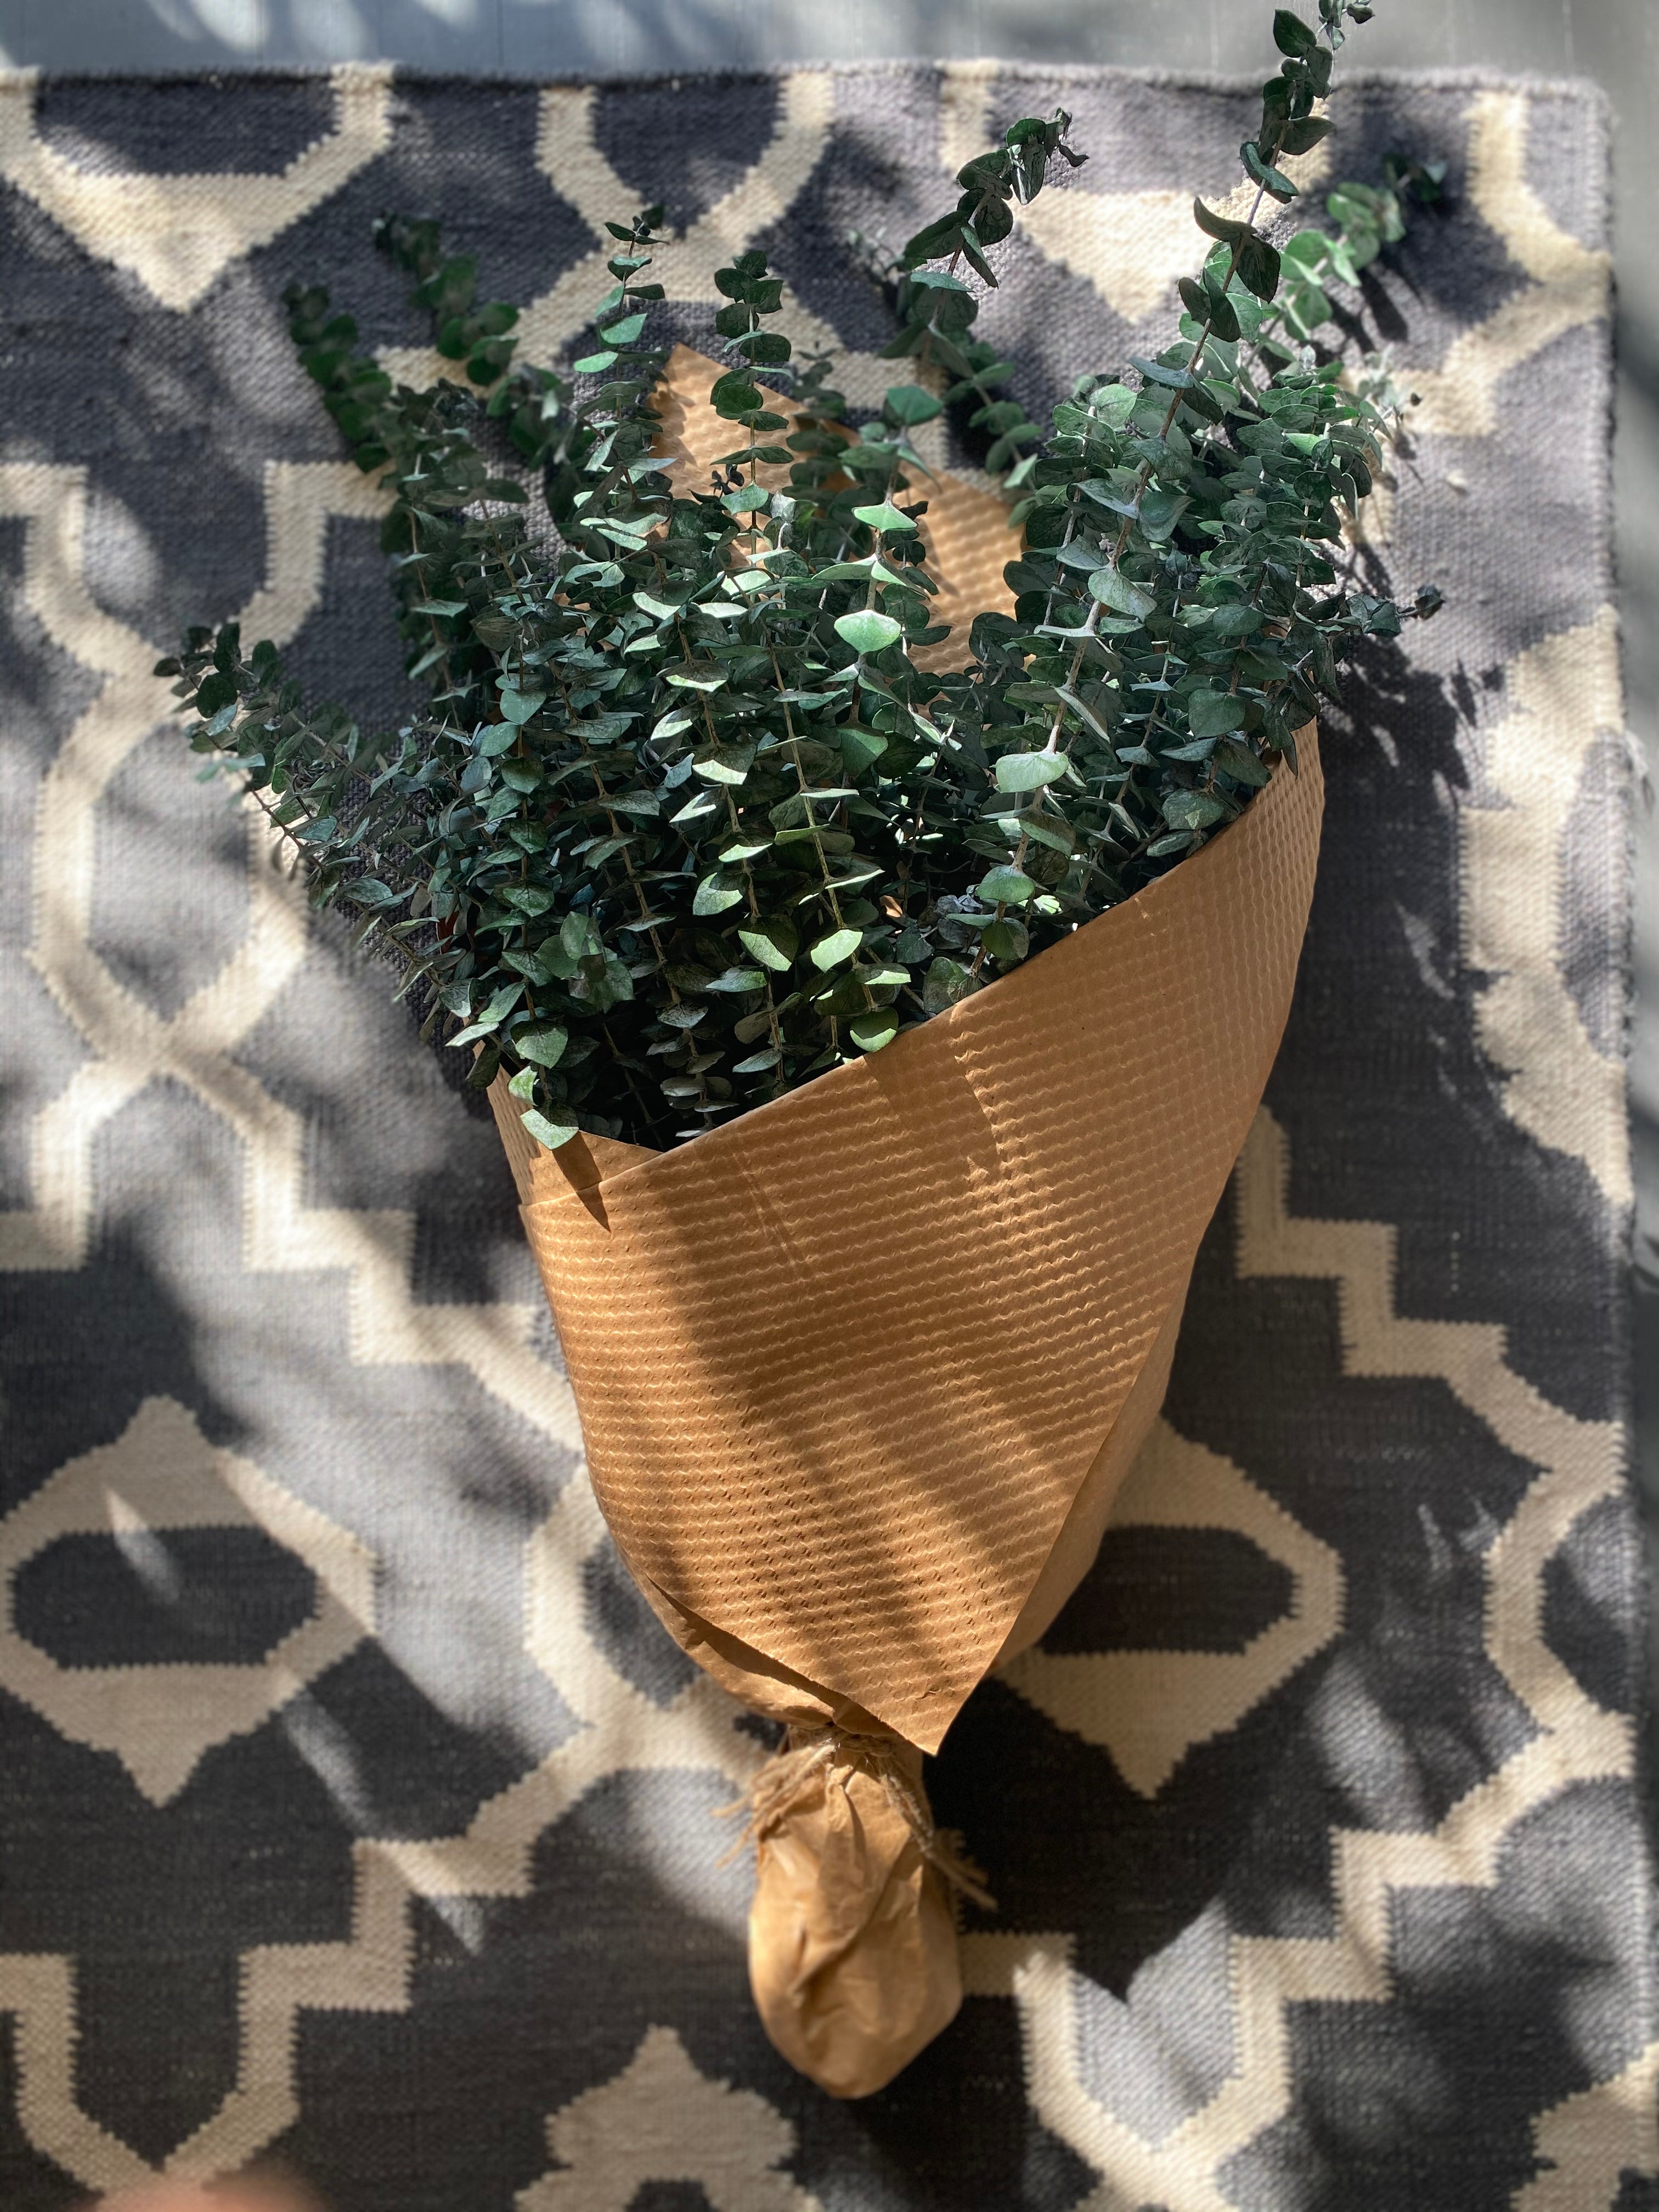 green preserved eucalyptus bundle against rug backdrop